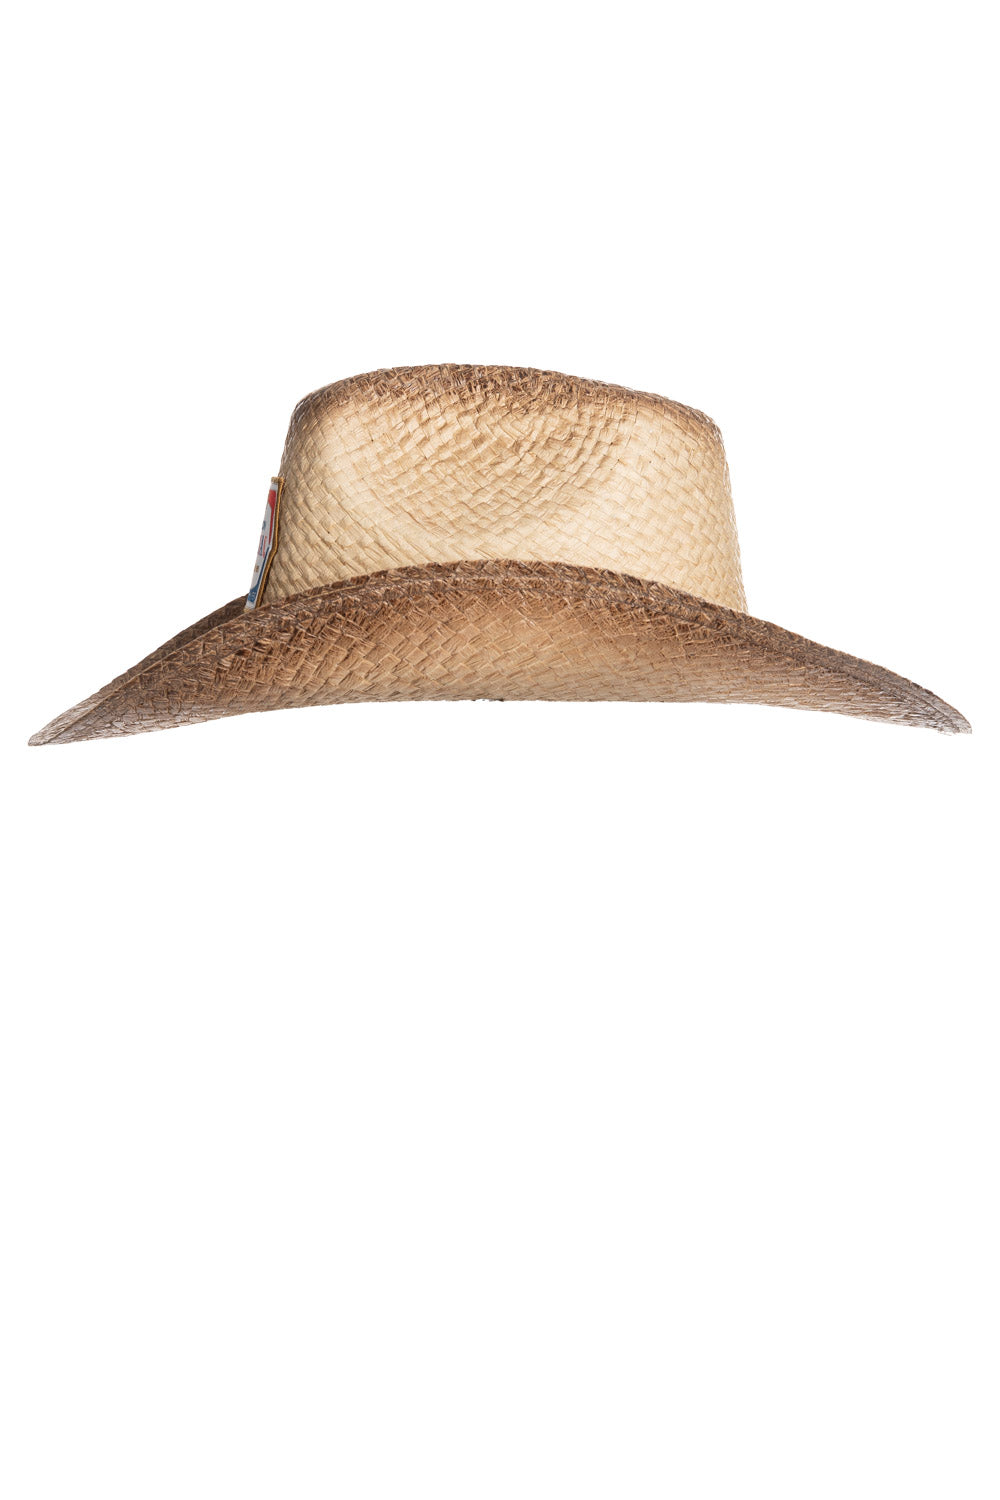 Molson Retro Label Straw Cowboy Hat